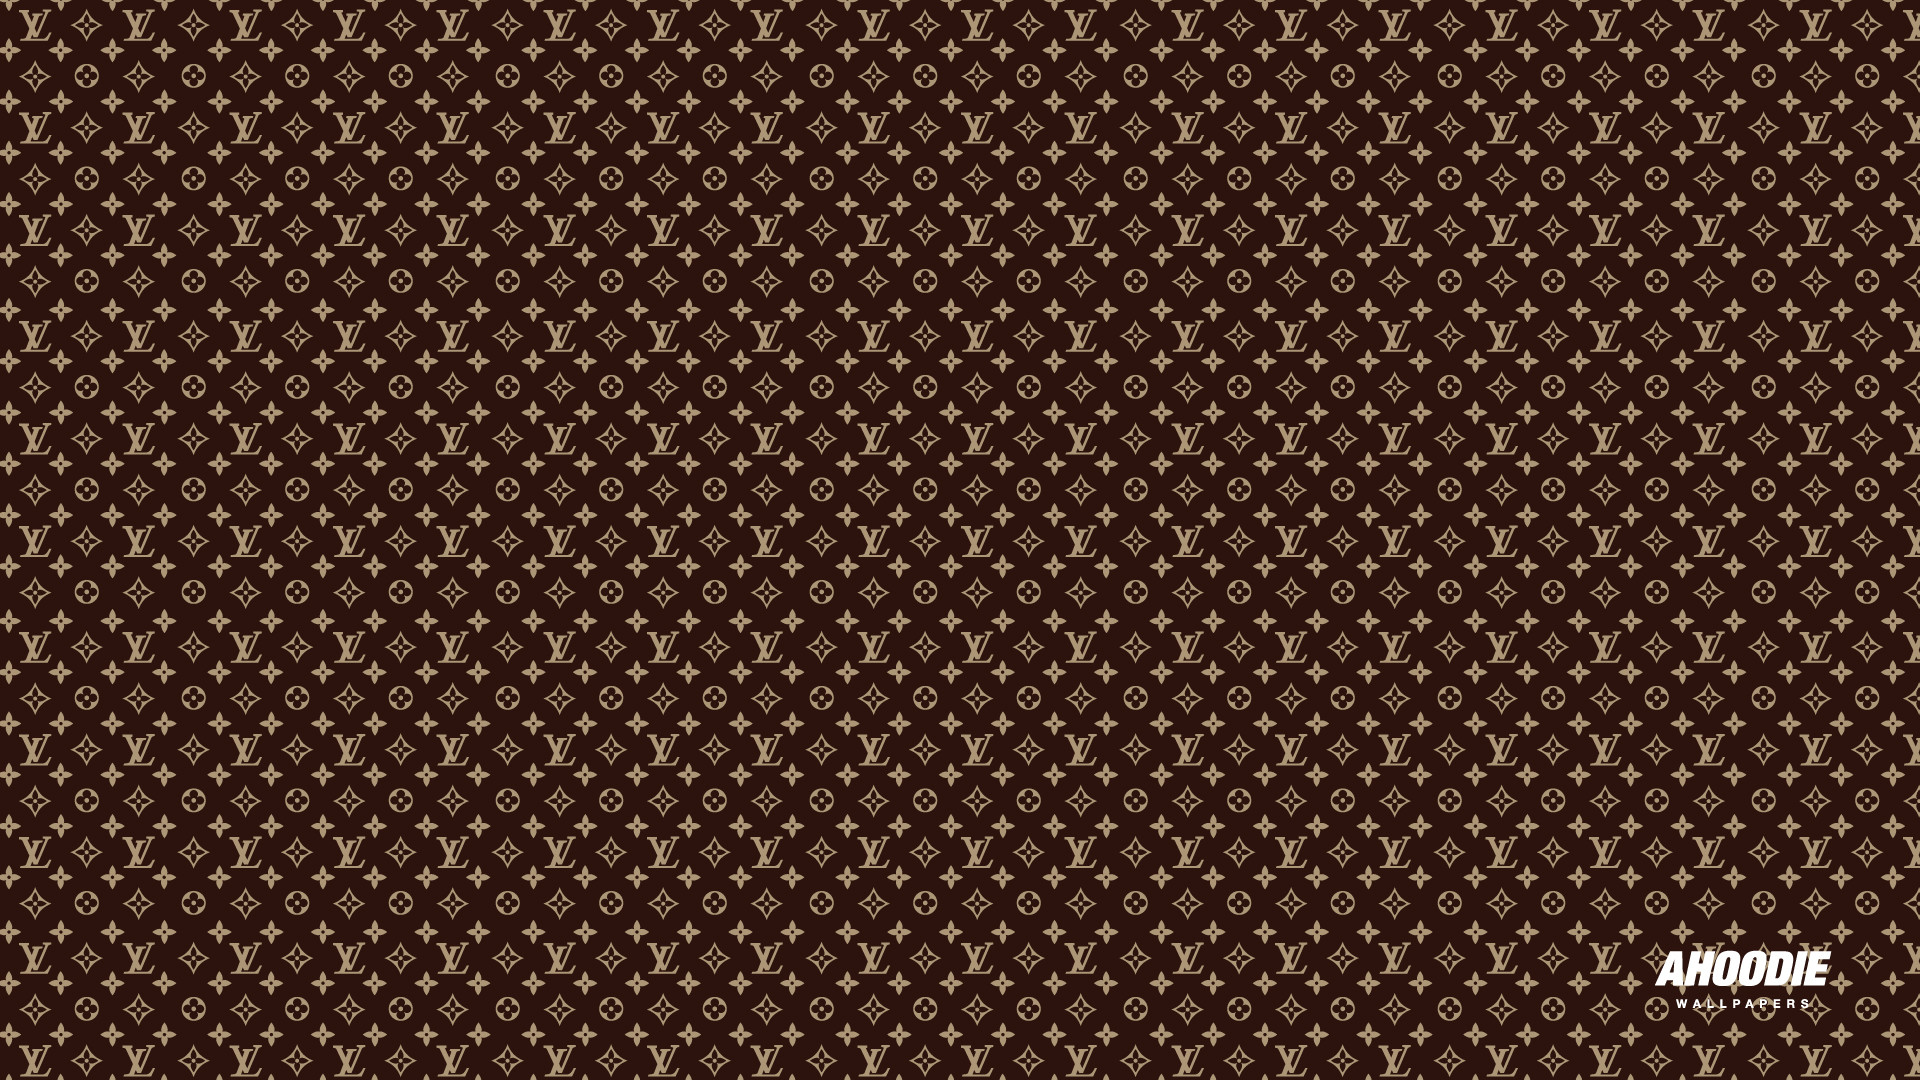 1920x1080 Hd Wallpapers Louis Vuitton Desktop 1920Ã1080 Wallpaper 1920Ã1080 .